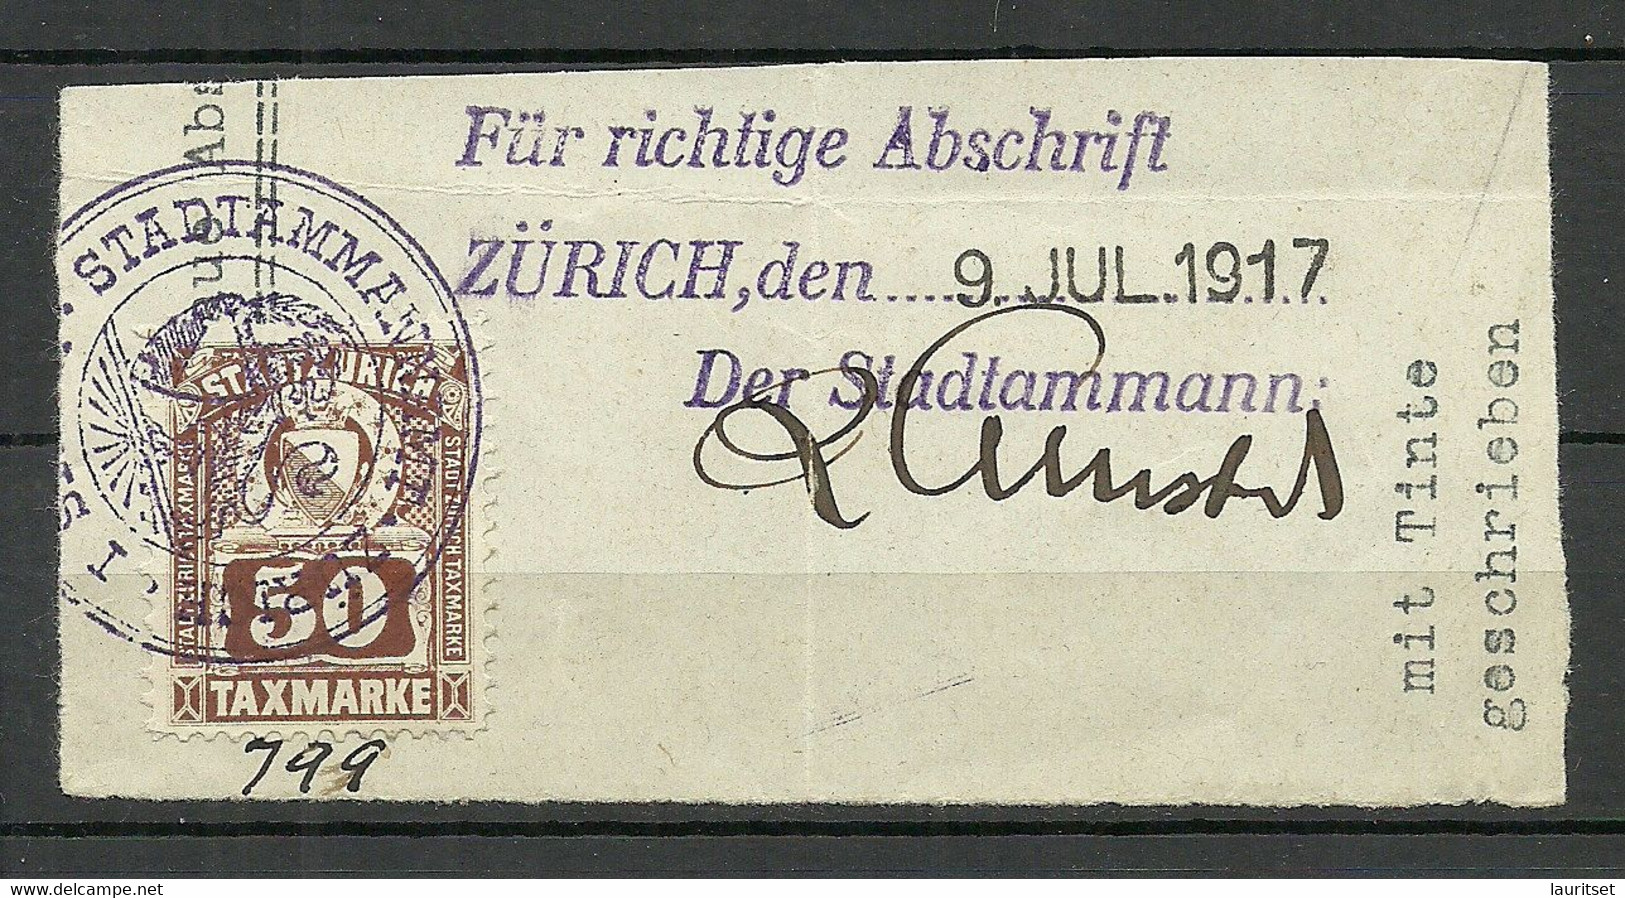 Schweiz Switzerland Stadt Zürich O 1917 Taxmarke Gebührenmrke Local Tax Auf Dokumentausschnitt - Fiscale Zegels